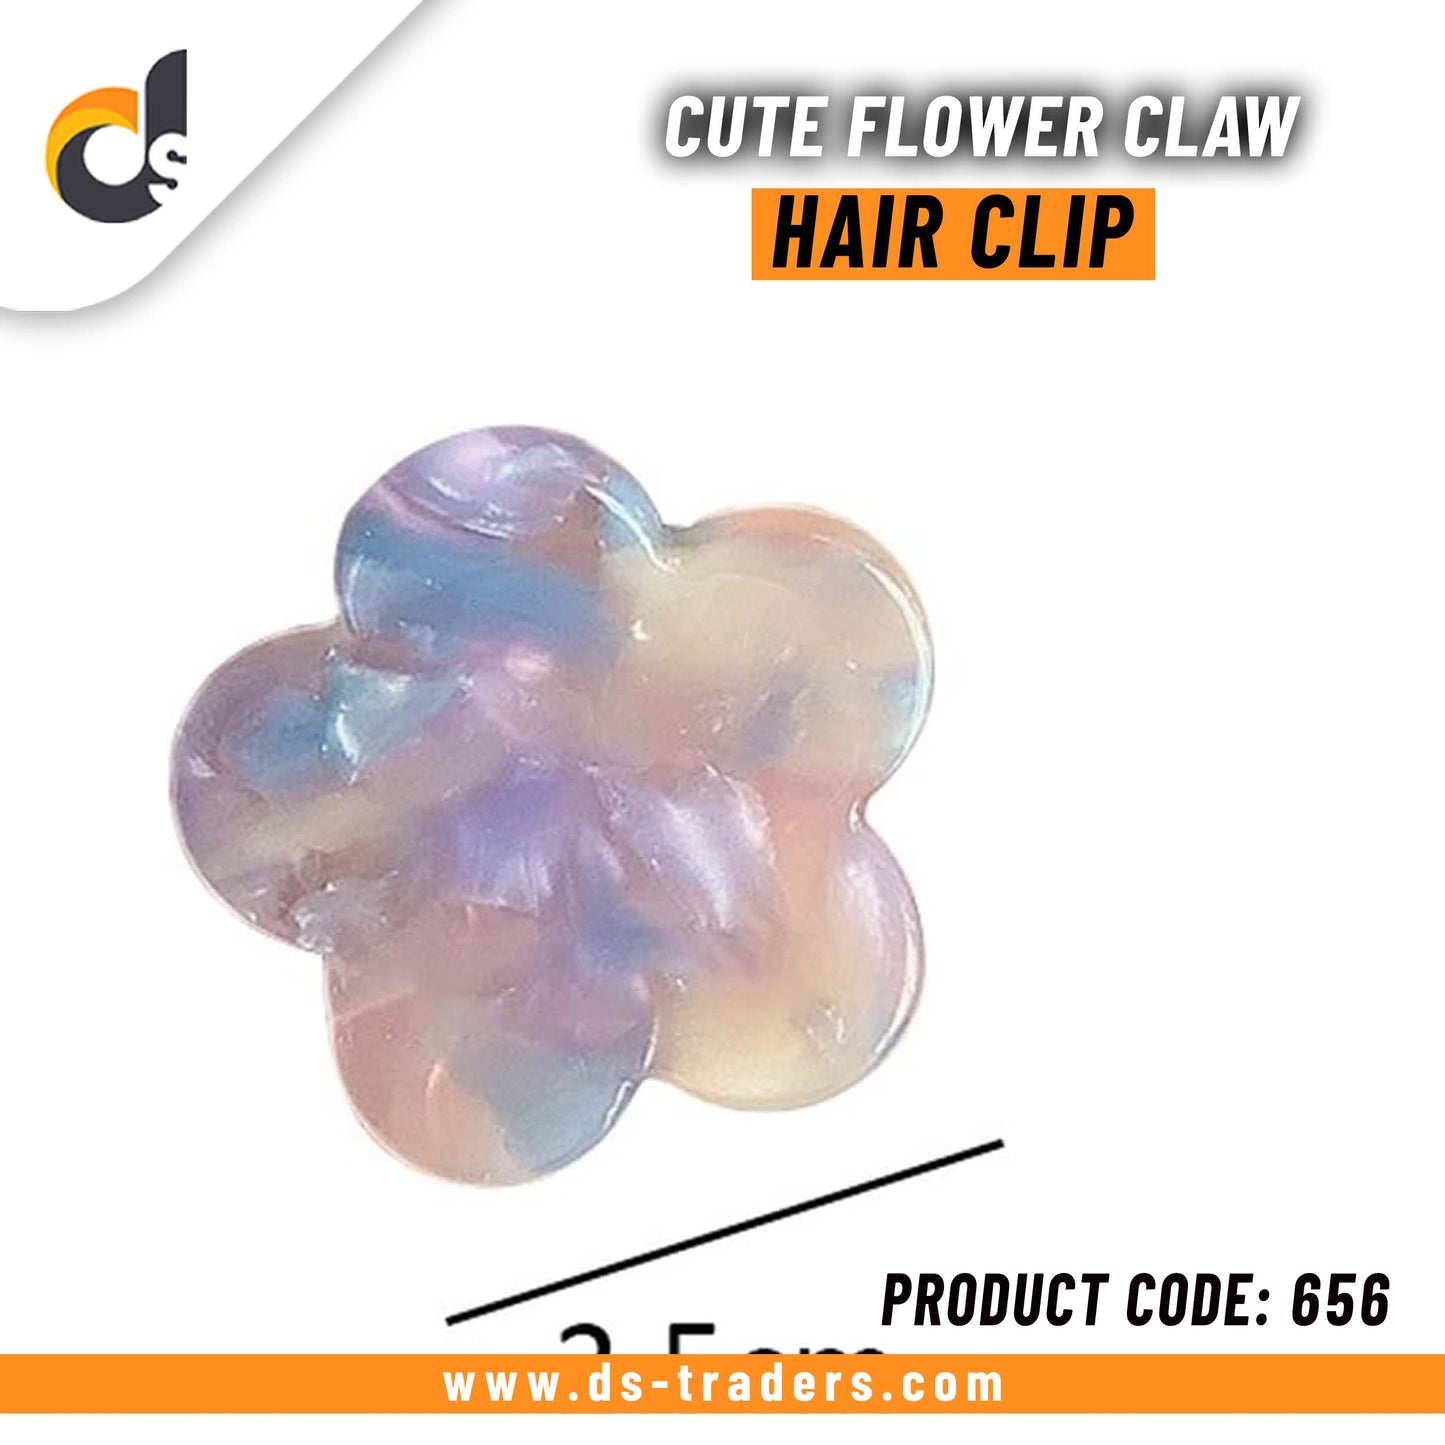 Cute Flower Claw Hair Clip